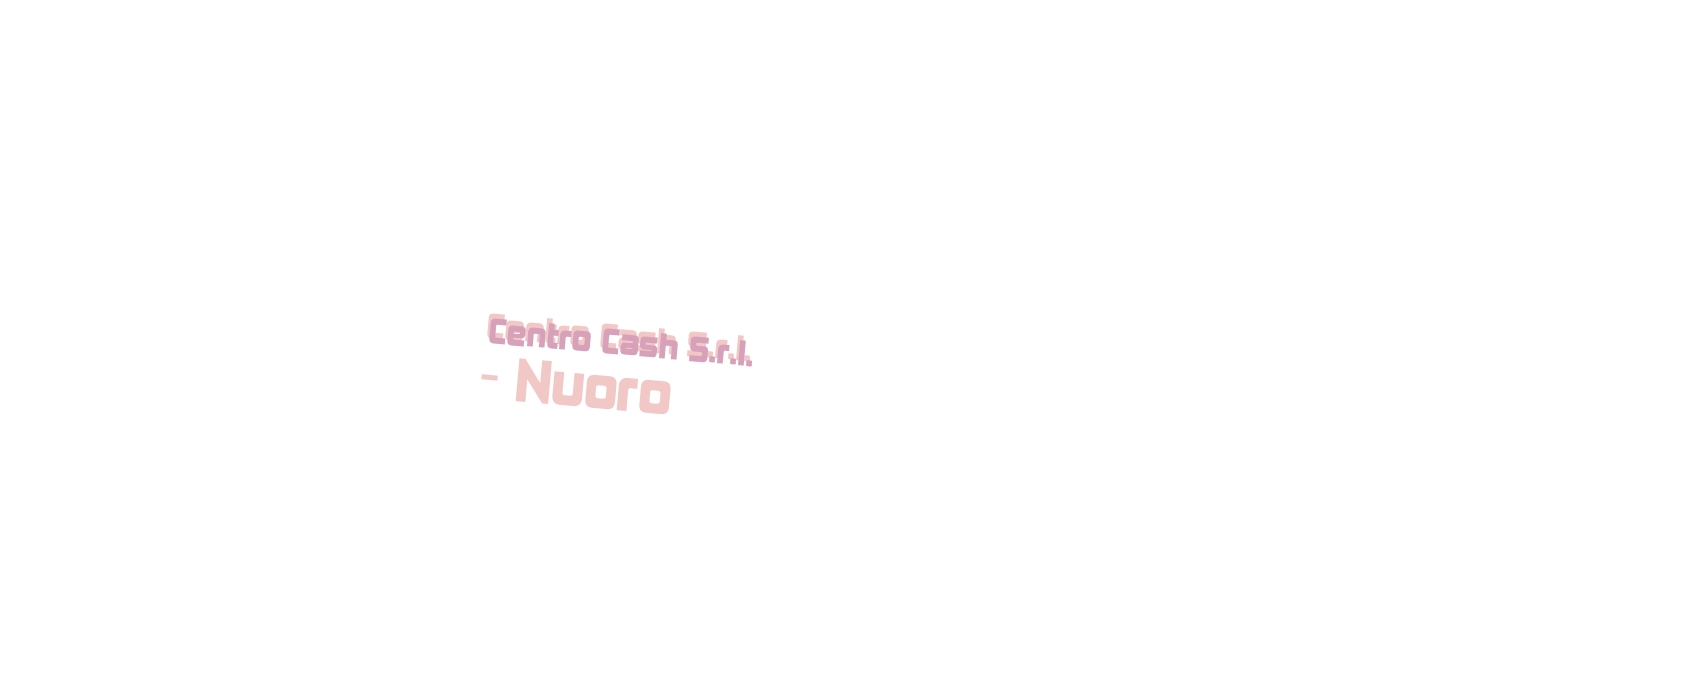 logo Centro Cash S.r.l. - Nuoro